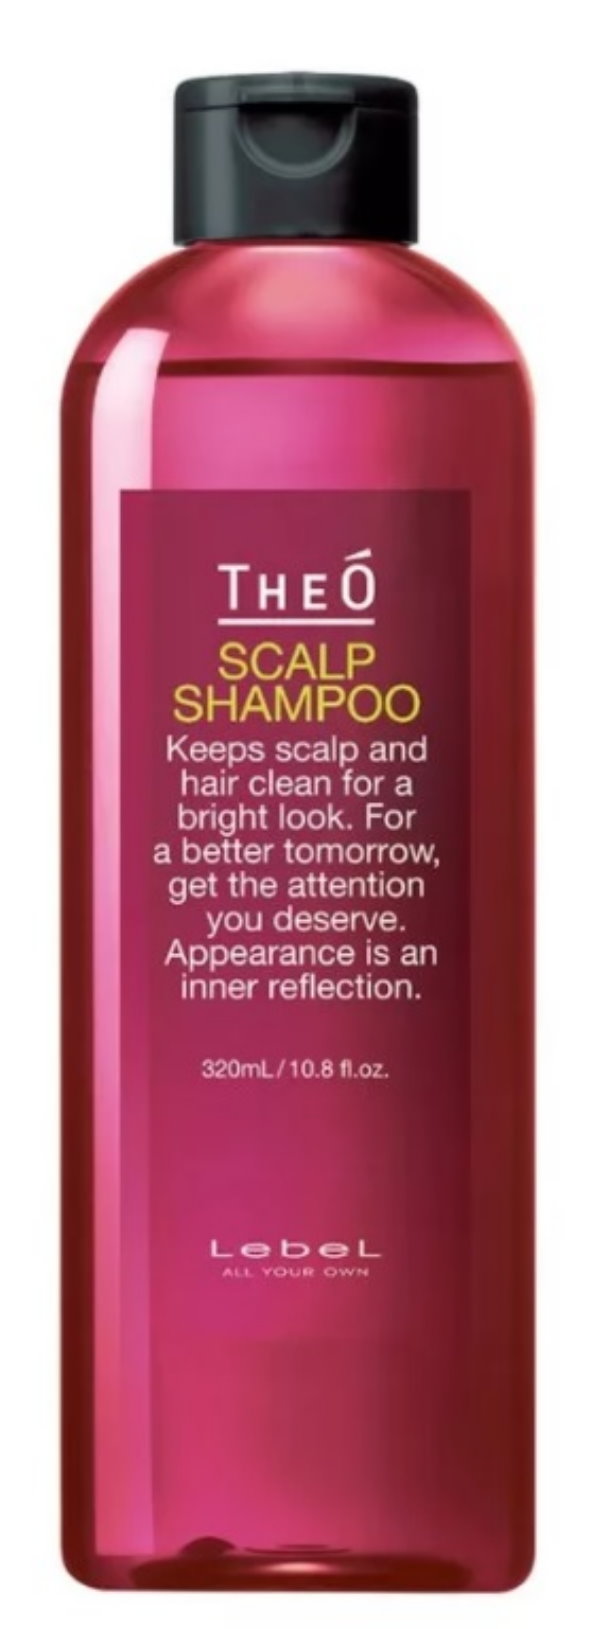 Шампунь многофункциональный Lebel TheO Scalp Shampoo, 320 мл lebel многофункциональный шампунь theo scalp shampoo 320